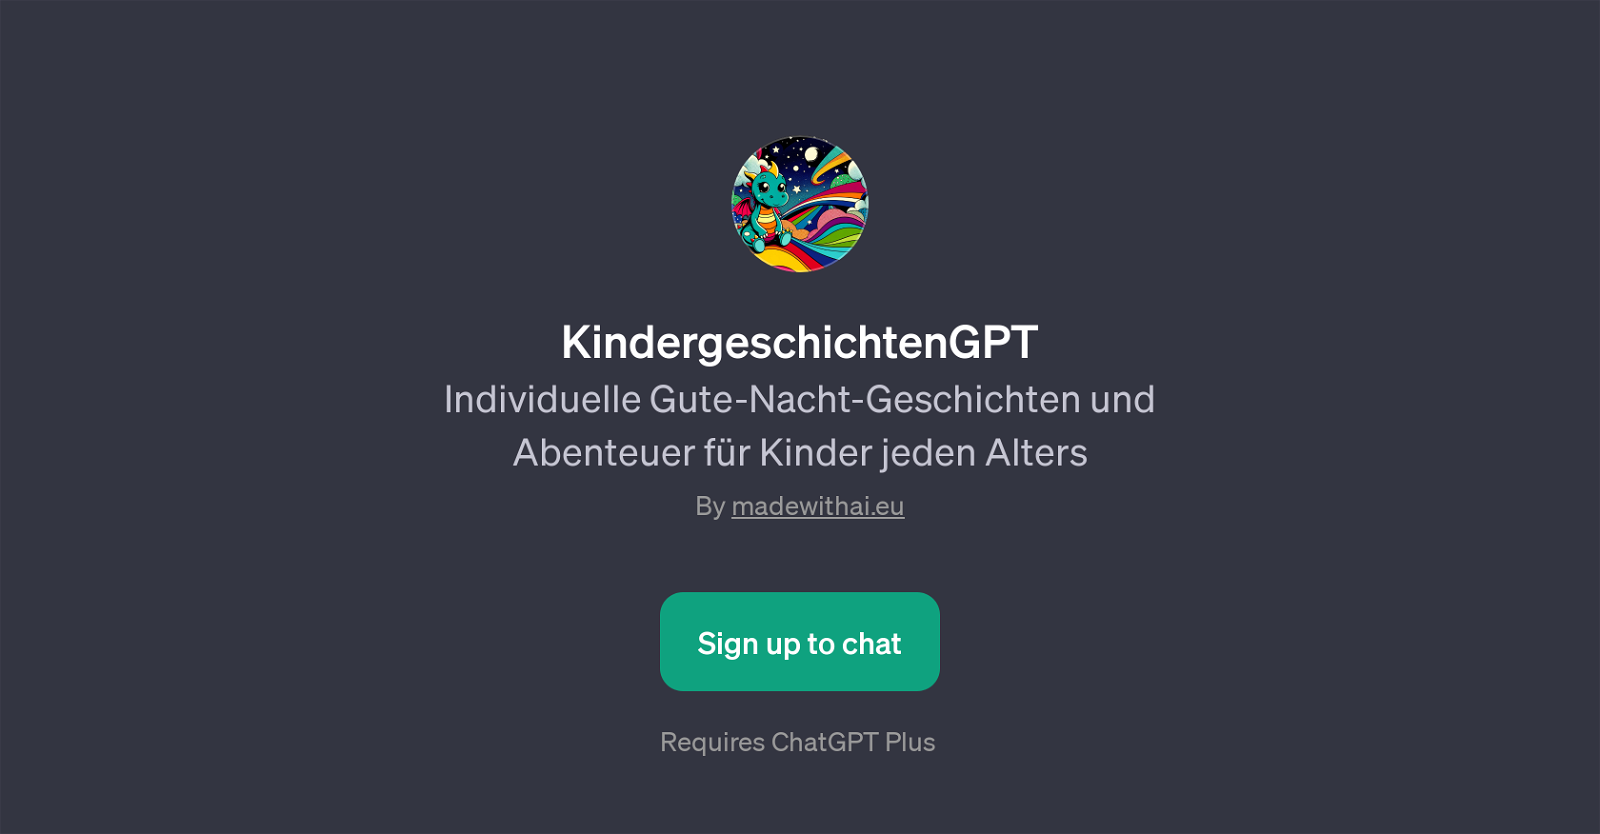 KindergeschichtenGPT website